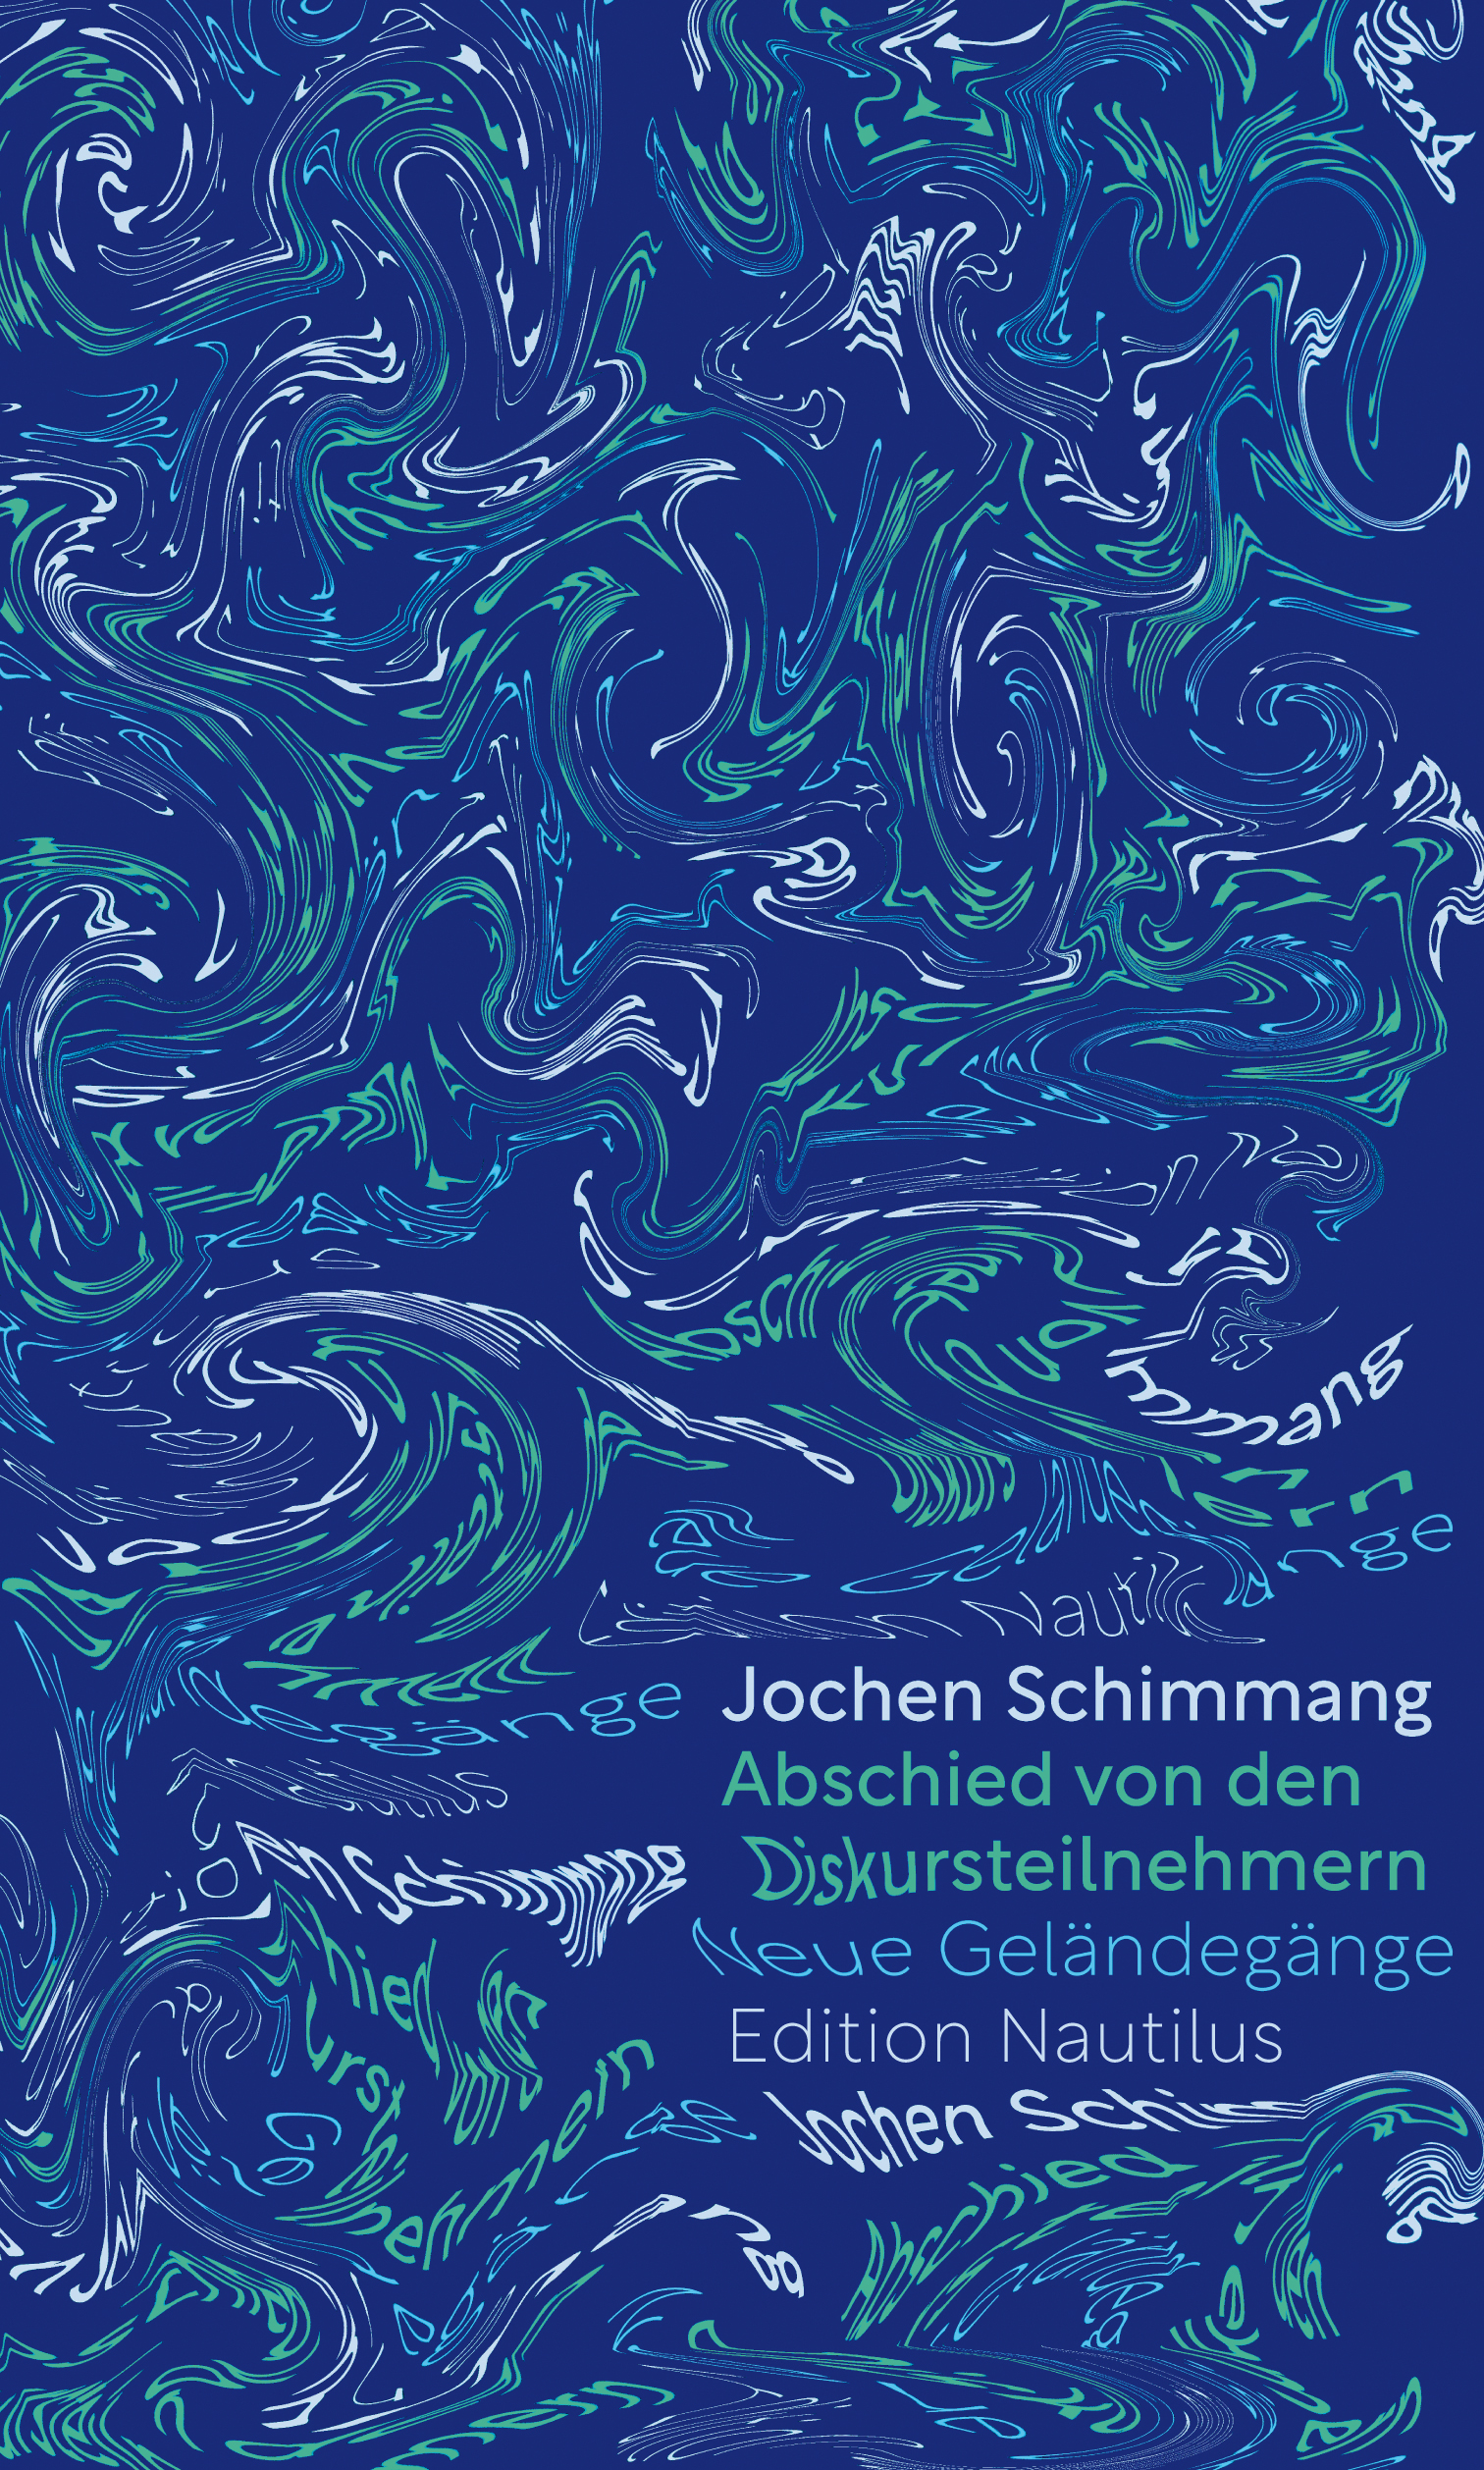 Lesung mit Jochen Schimmang